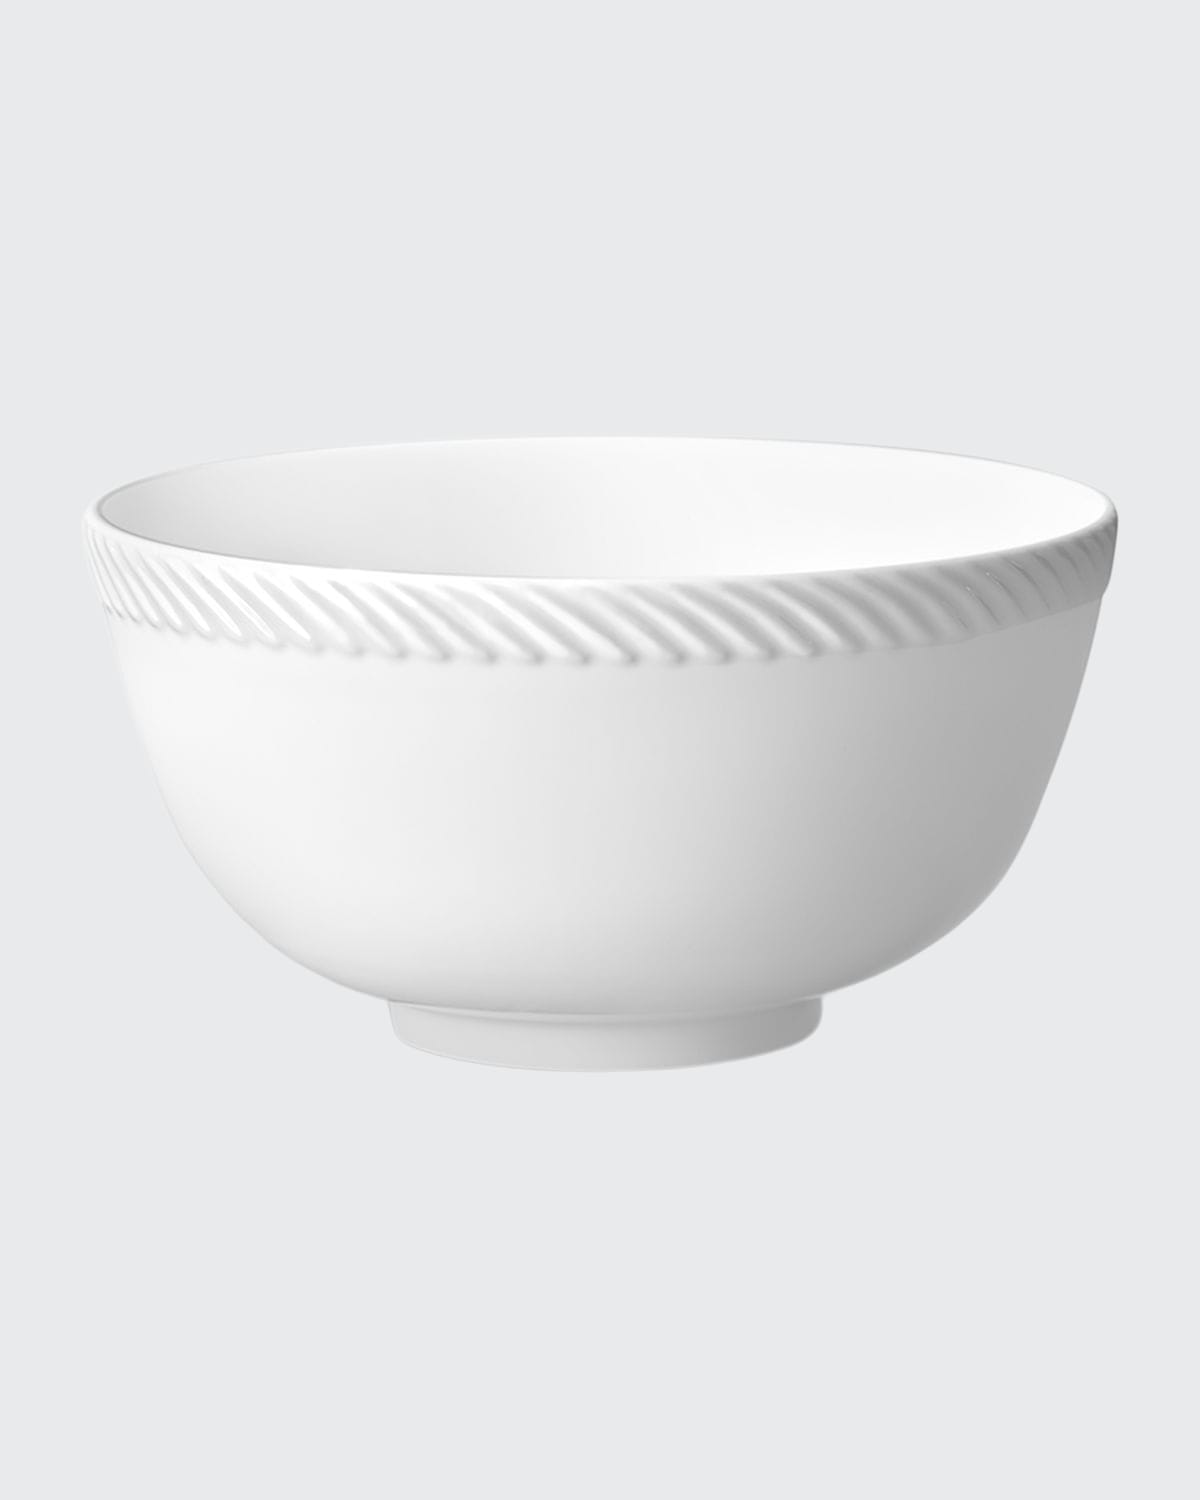 Shop L'objet Corde Cereal Bowl, White